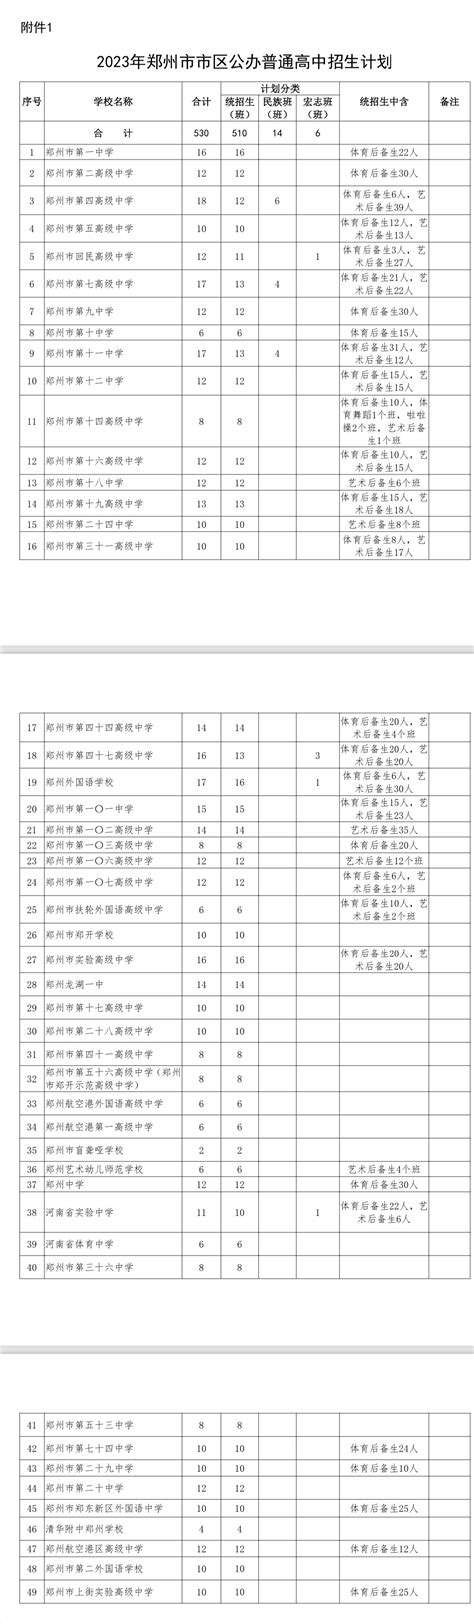 郑州2023年高中招生,关于郑州2023年高中招生的所有信息 - 中华网河南